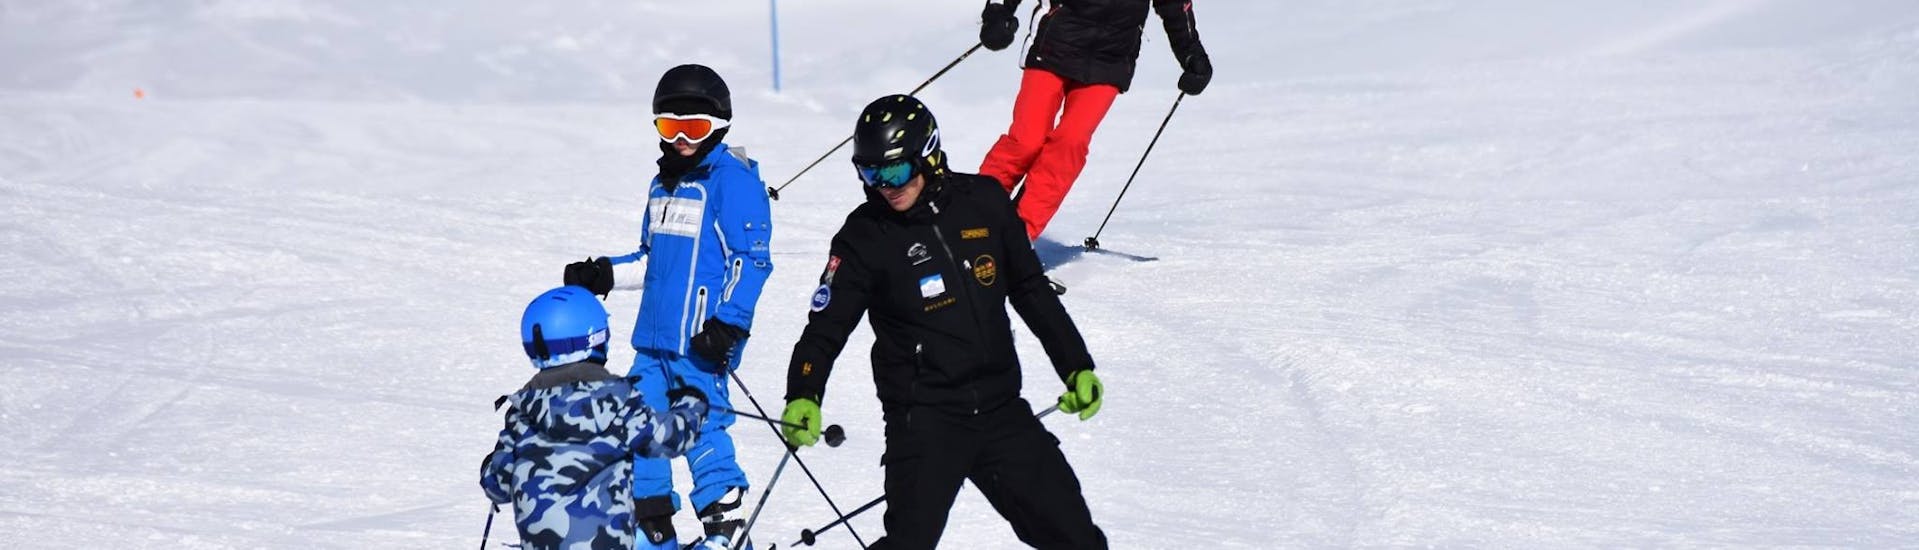 Skilehrer und Kinder fahren im Schneepflug die Piste runter während dem Kinder-Skikurs für Anfänger mit Ski Cool St. Moritz.